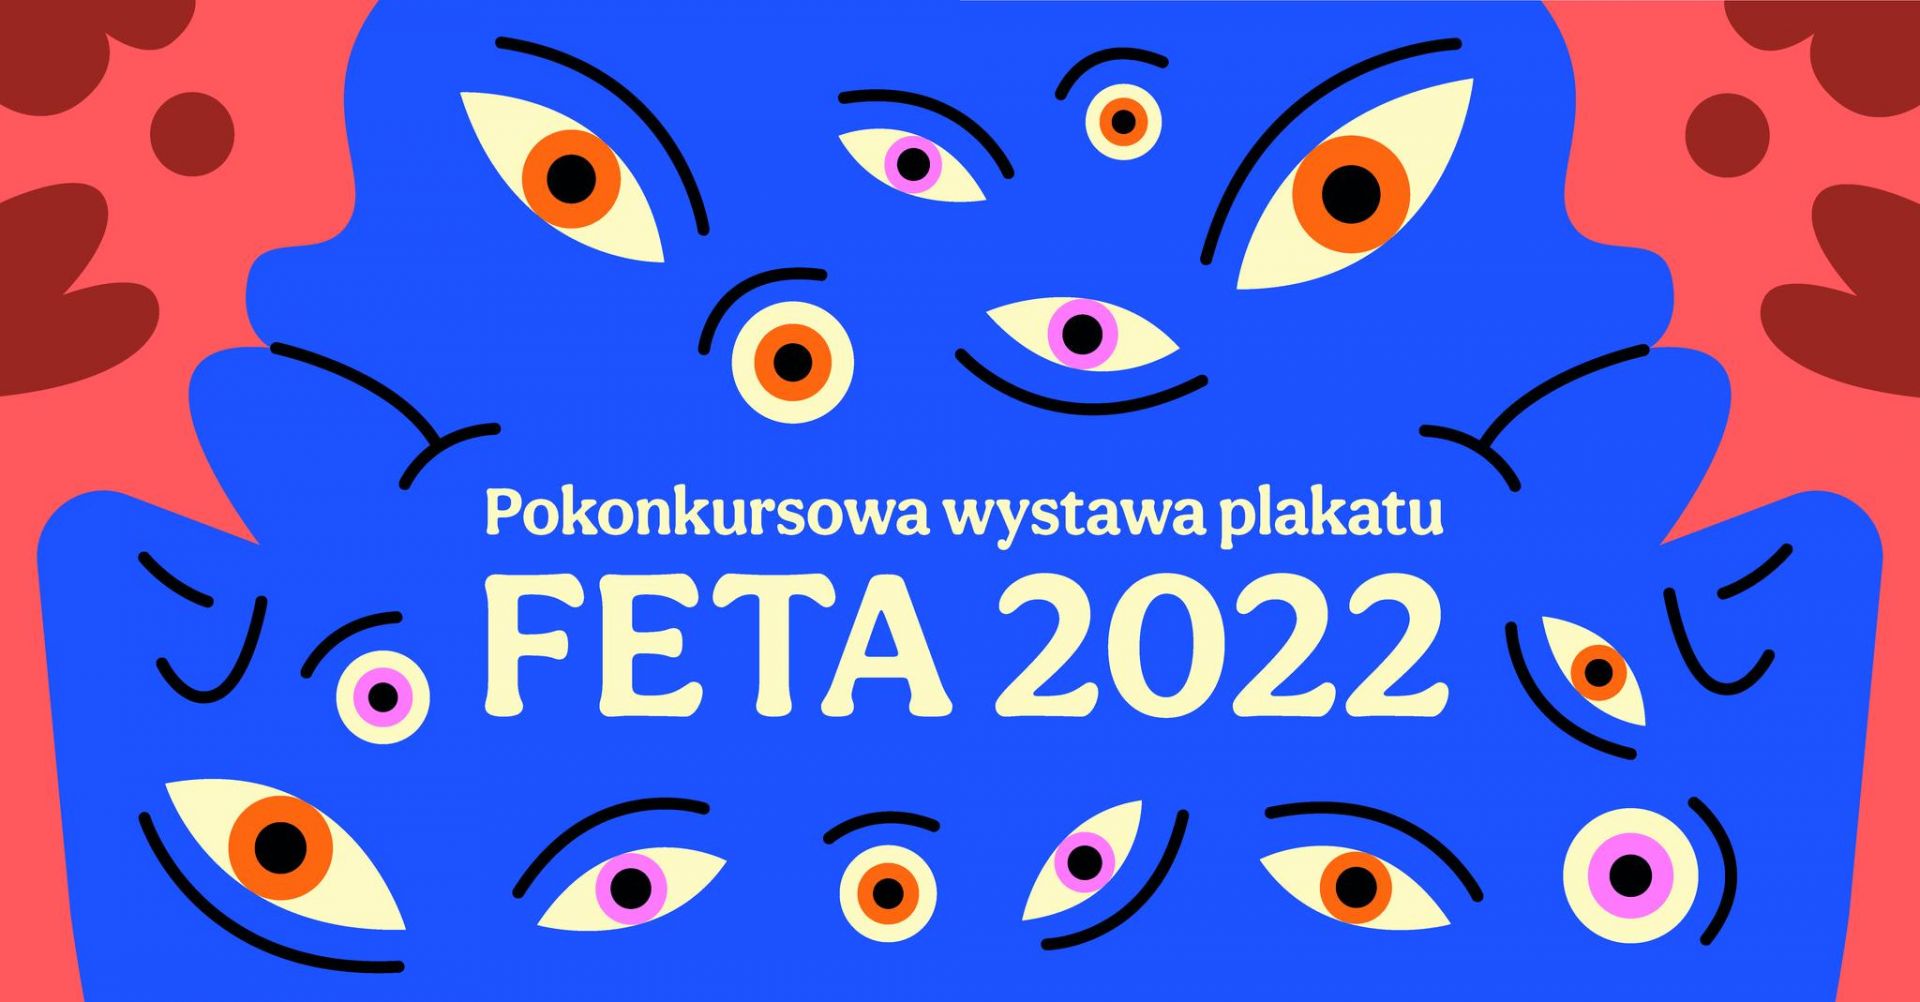 Pokonkursowa wystawa plakatu FETA 2022